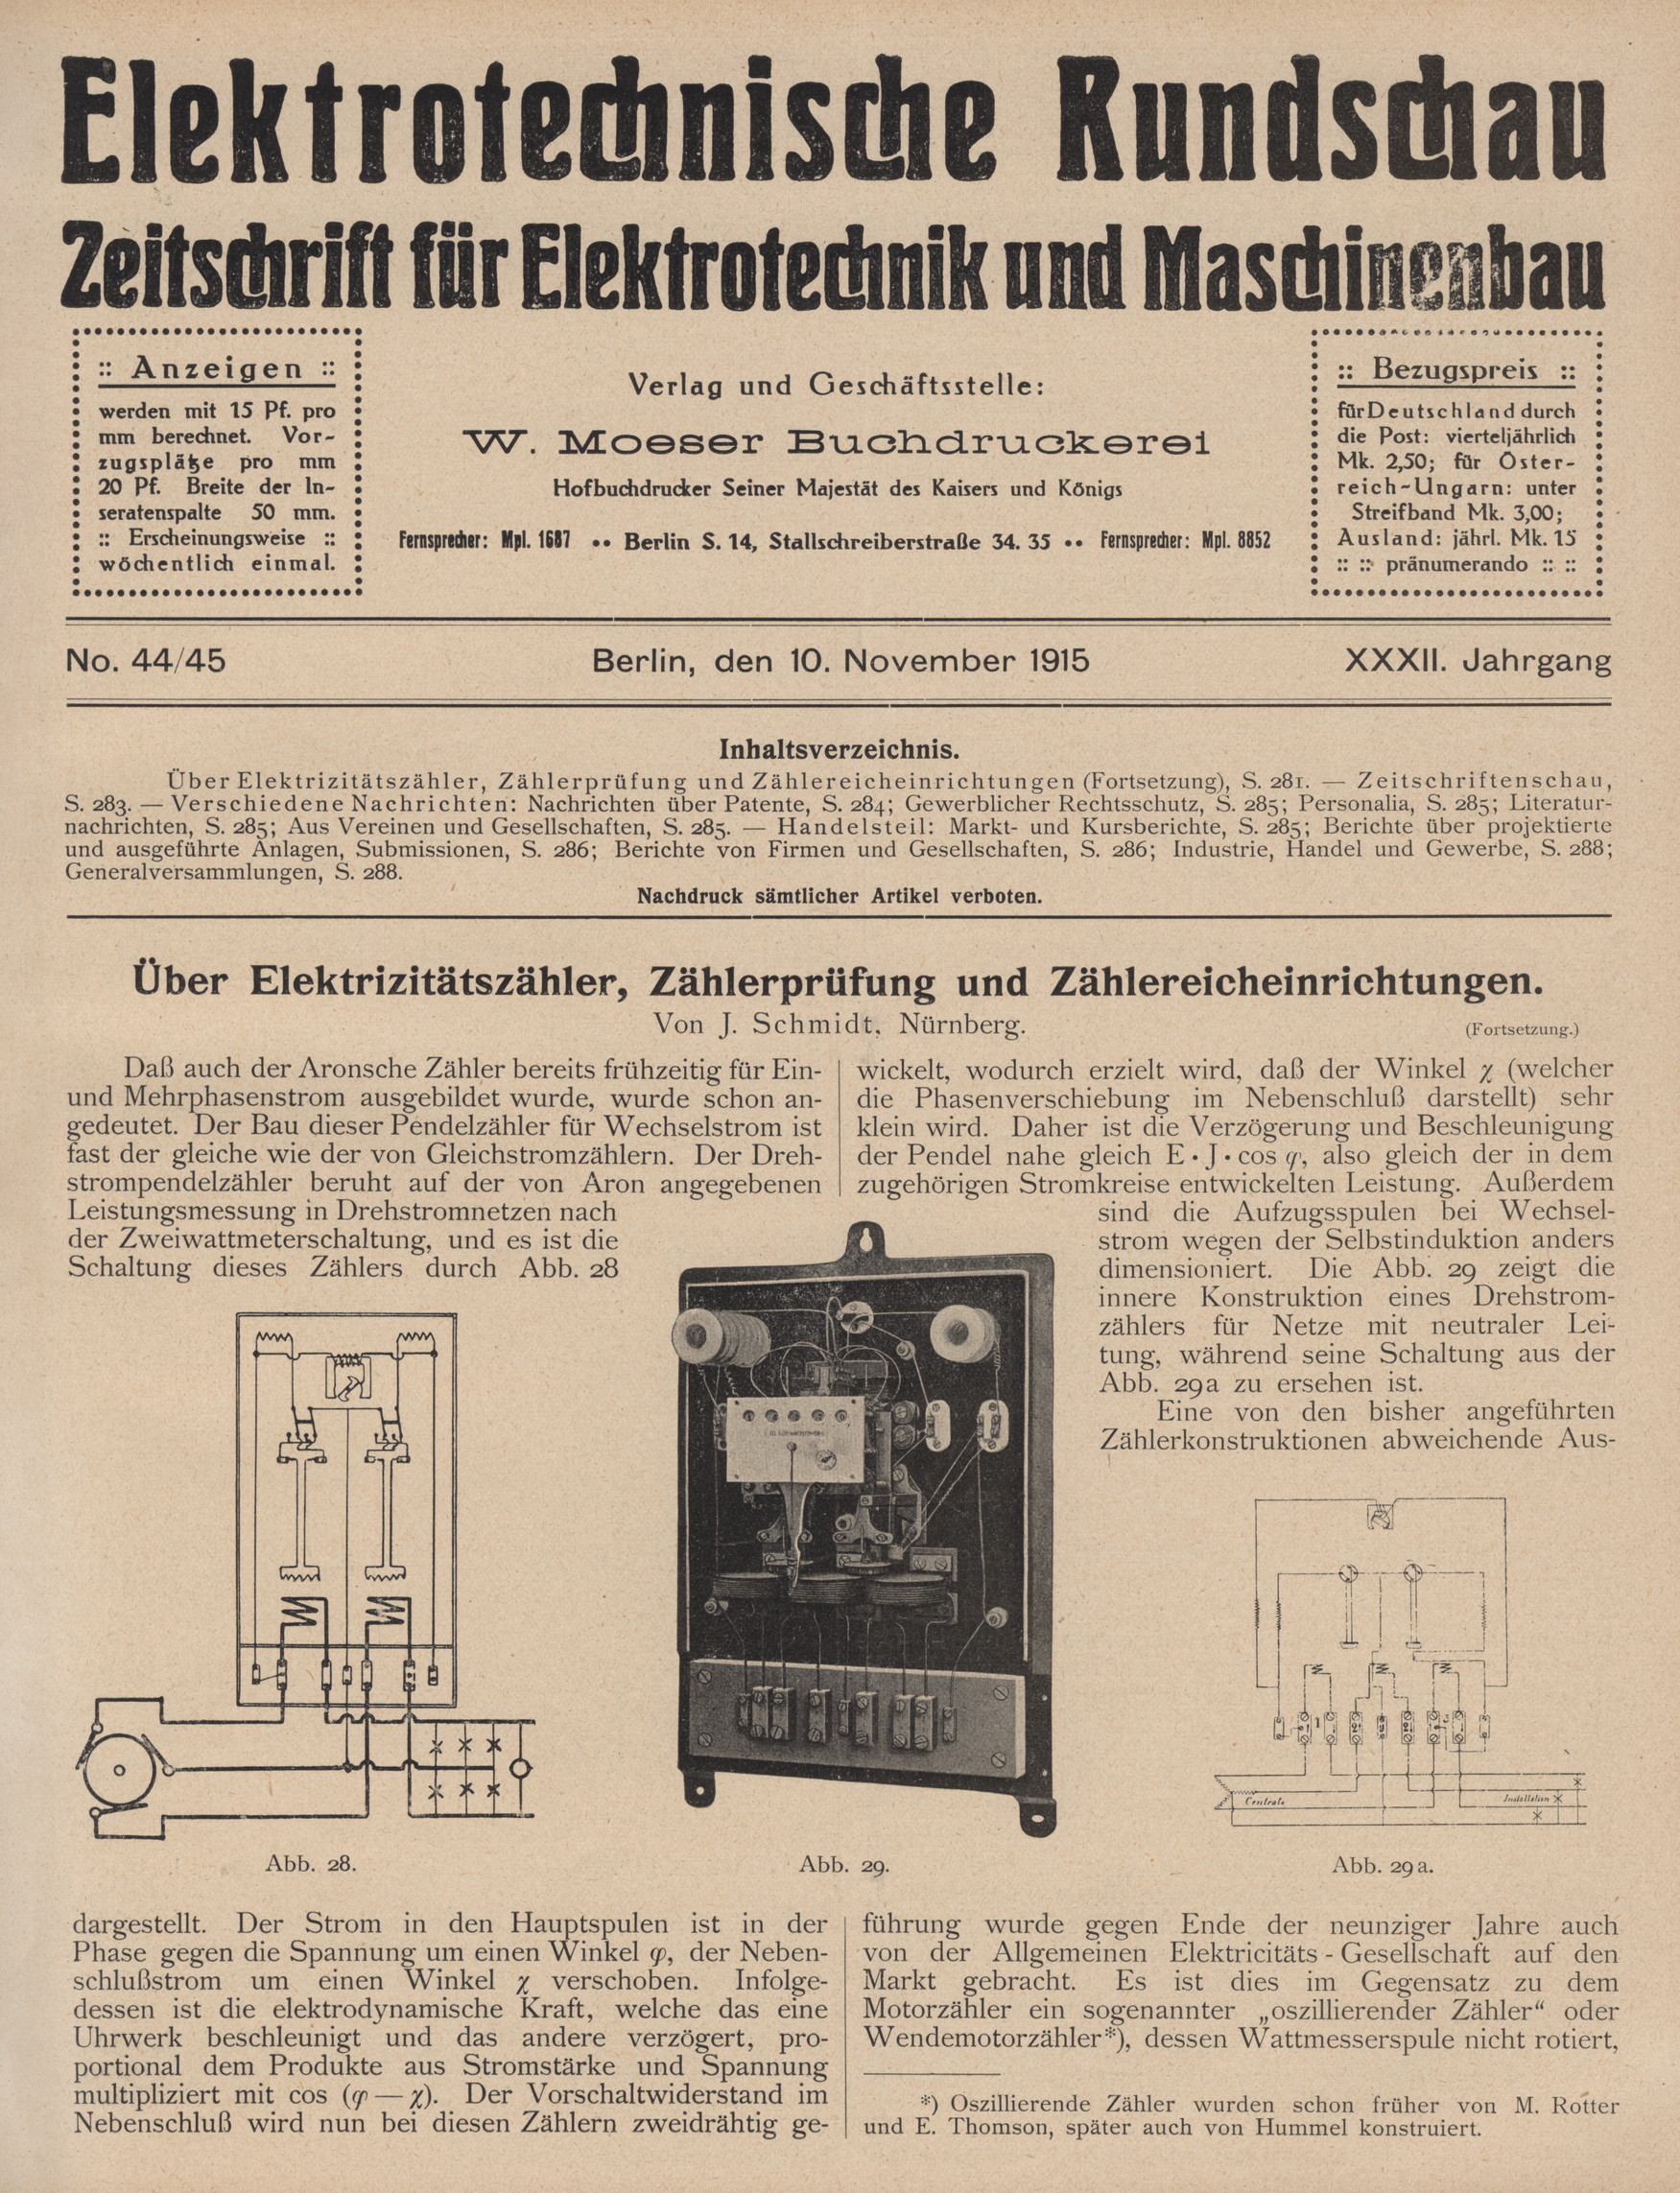 Elektrotechnische Rundschau : Zeitschrift für Elektrotechnik und Maschinenbau + Polytechnische Rundschau, No. 44/45, XXXII. Jahrgang